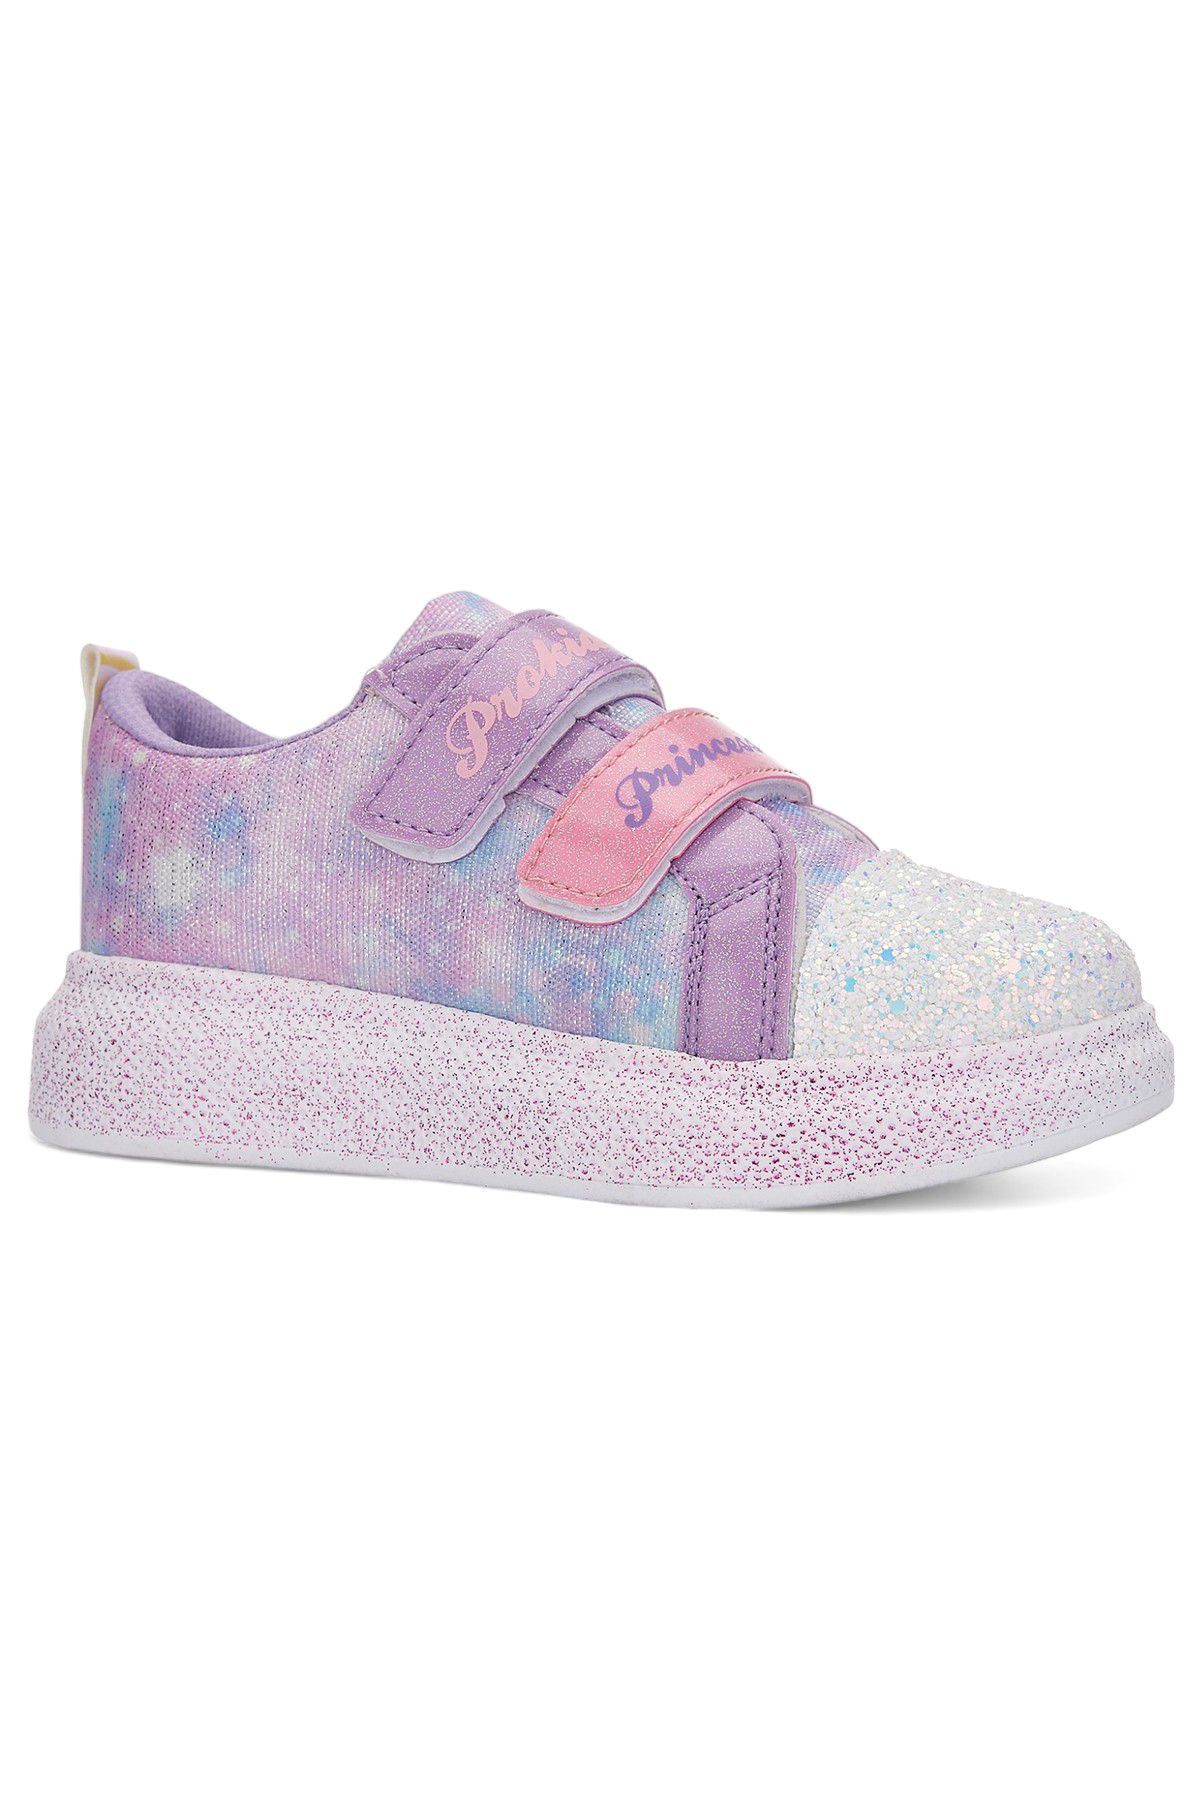 İmerShoes Günlük Açık Pembe Kız Çocuk Spor Ayakkabı Cırtlı Lastik Bağcıklı Taşlı Simli Sneaker 3730